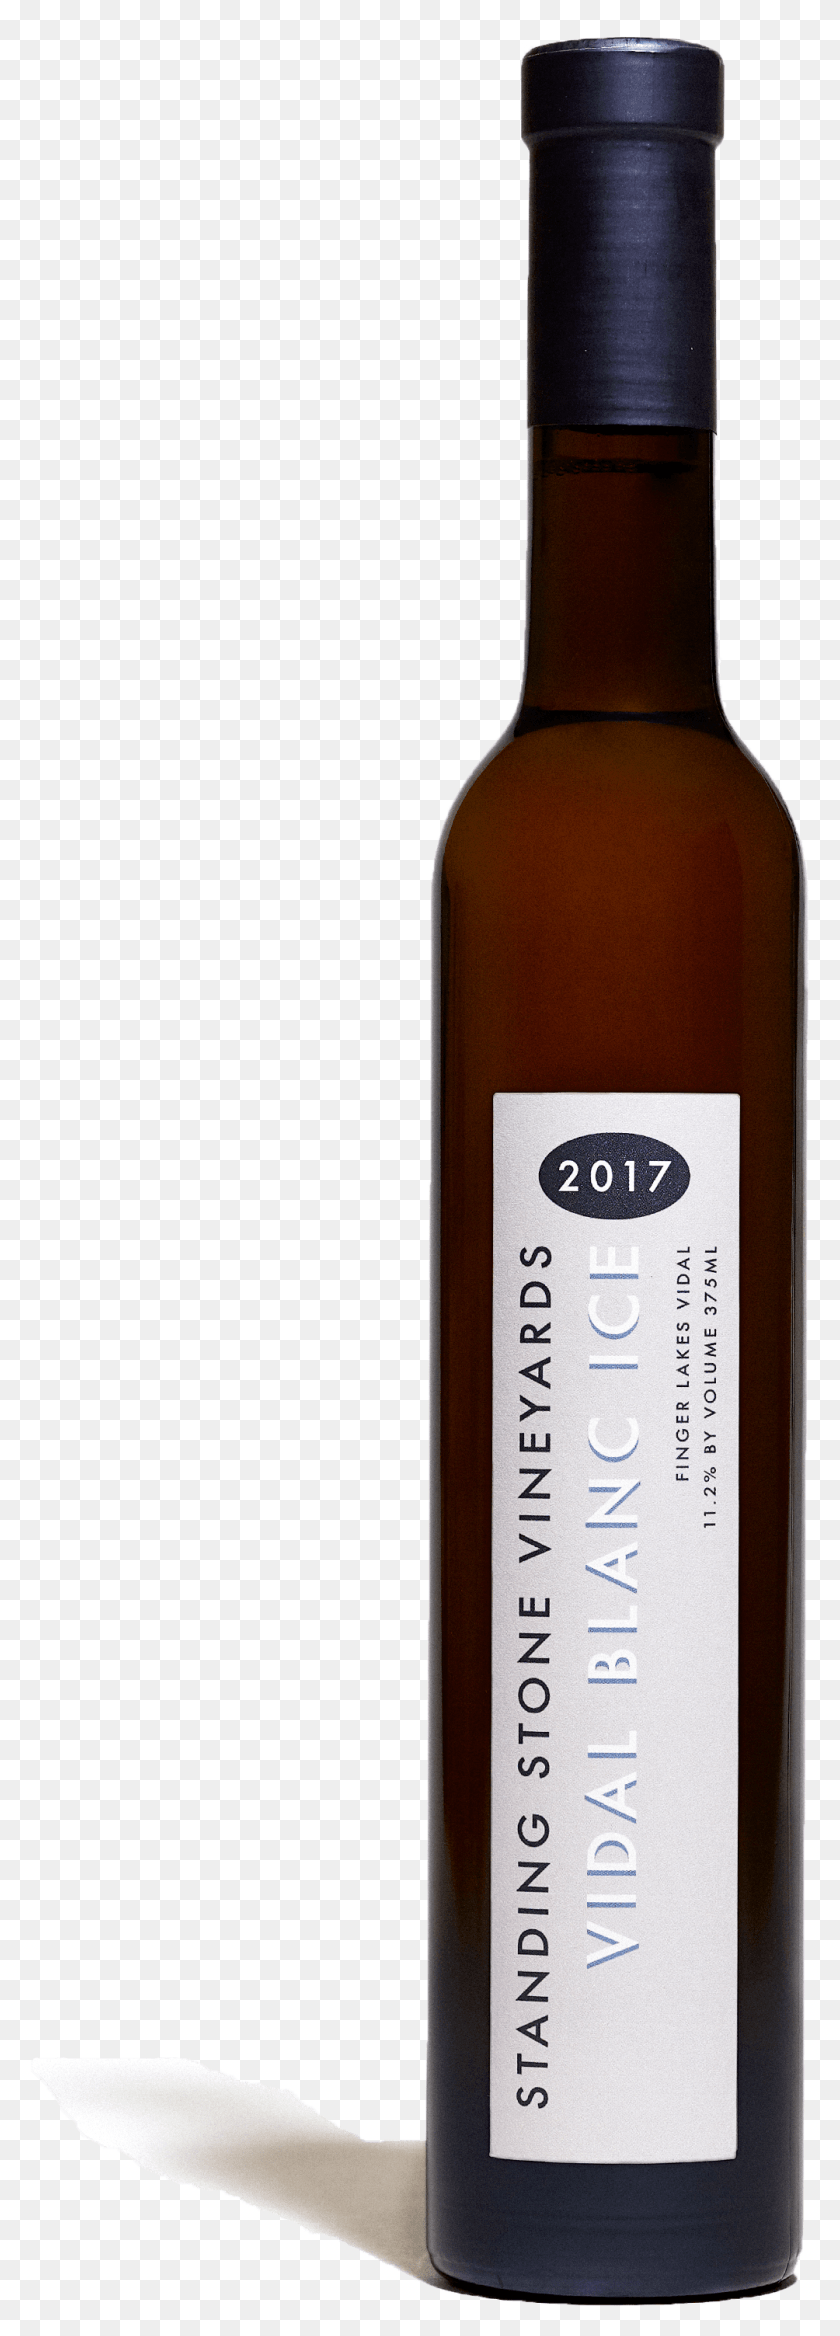 1004x2930 Descargar Vidal Blanc Ice 2017 Botella De Vino Botella De Vino, Alcohol, Bebida, Bebida Hd Png